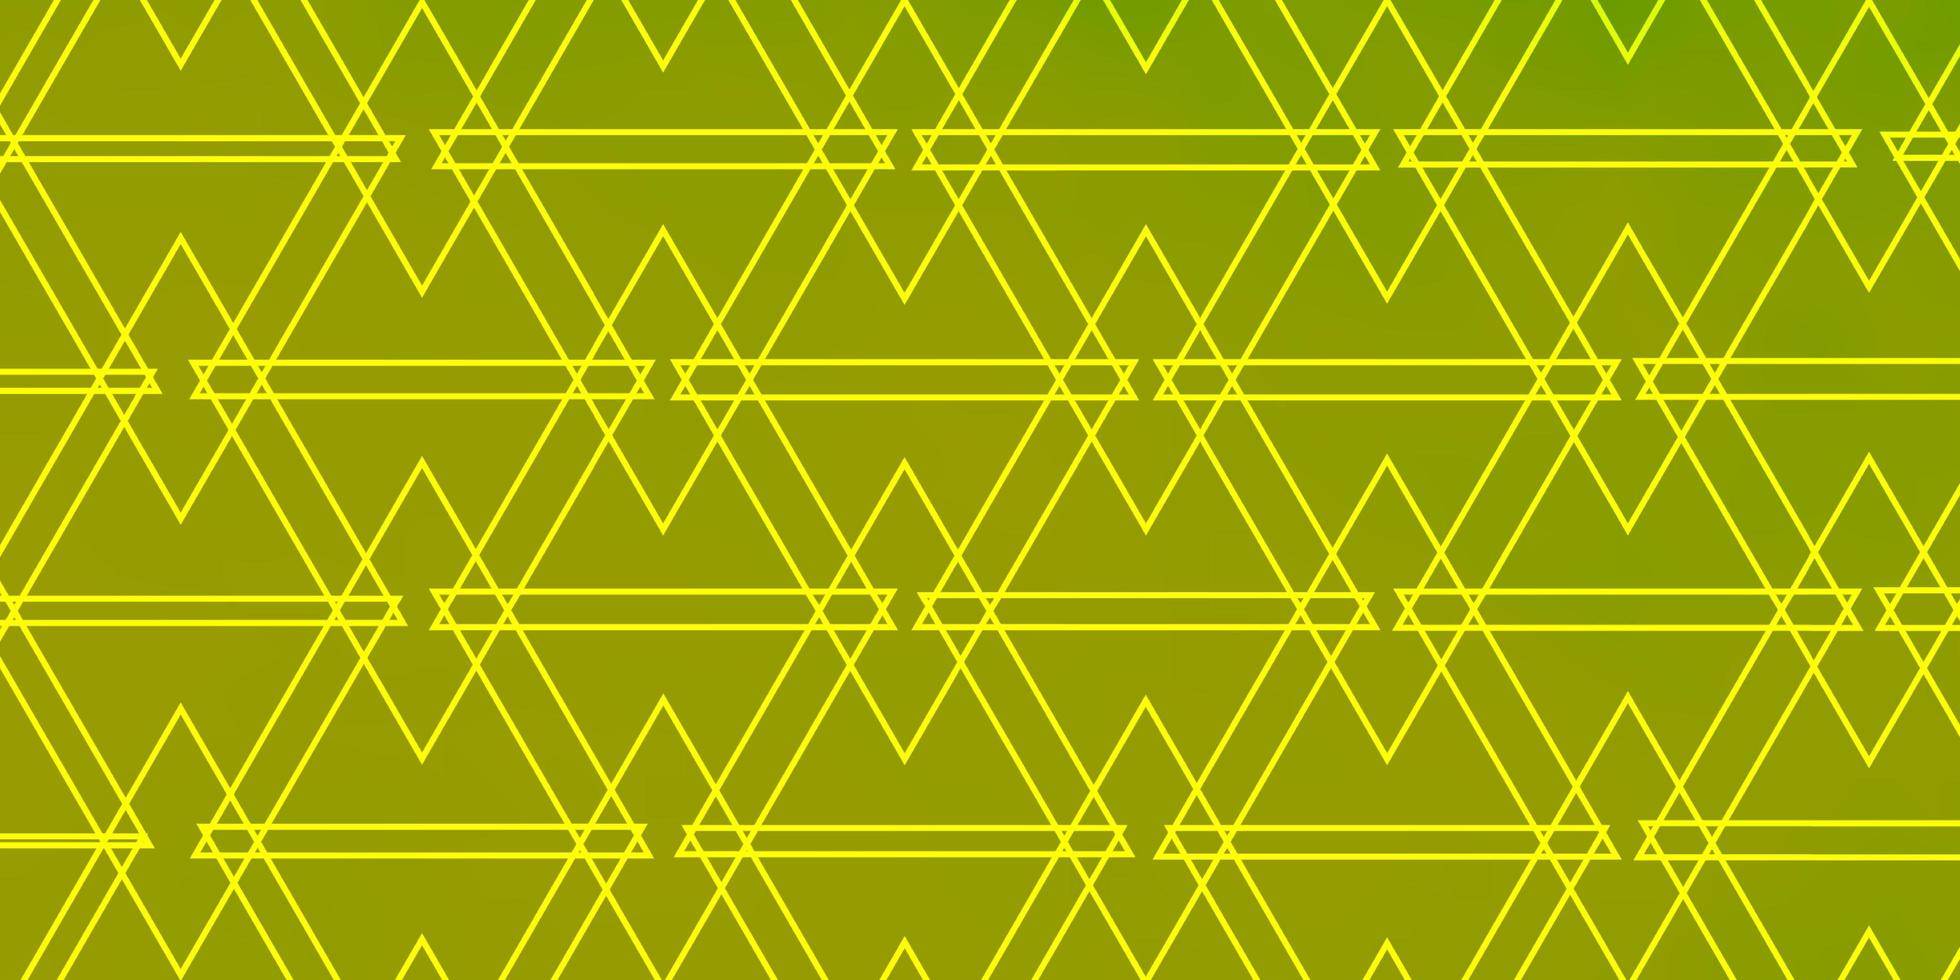 sfondo verde e giallo con triangoli. vettore